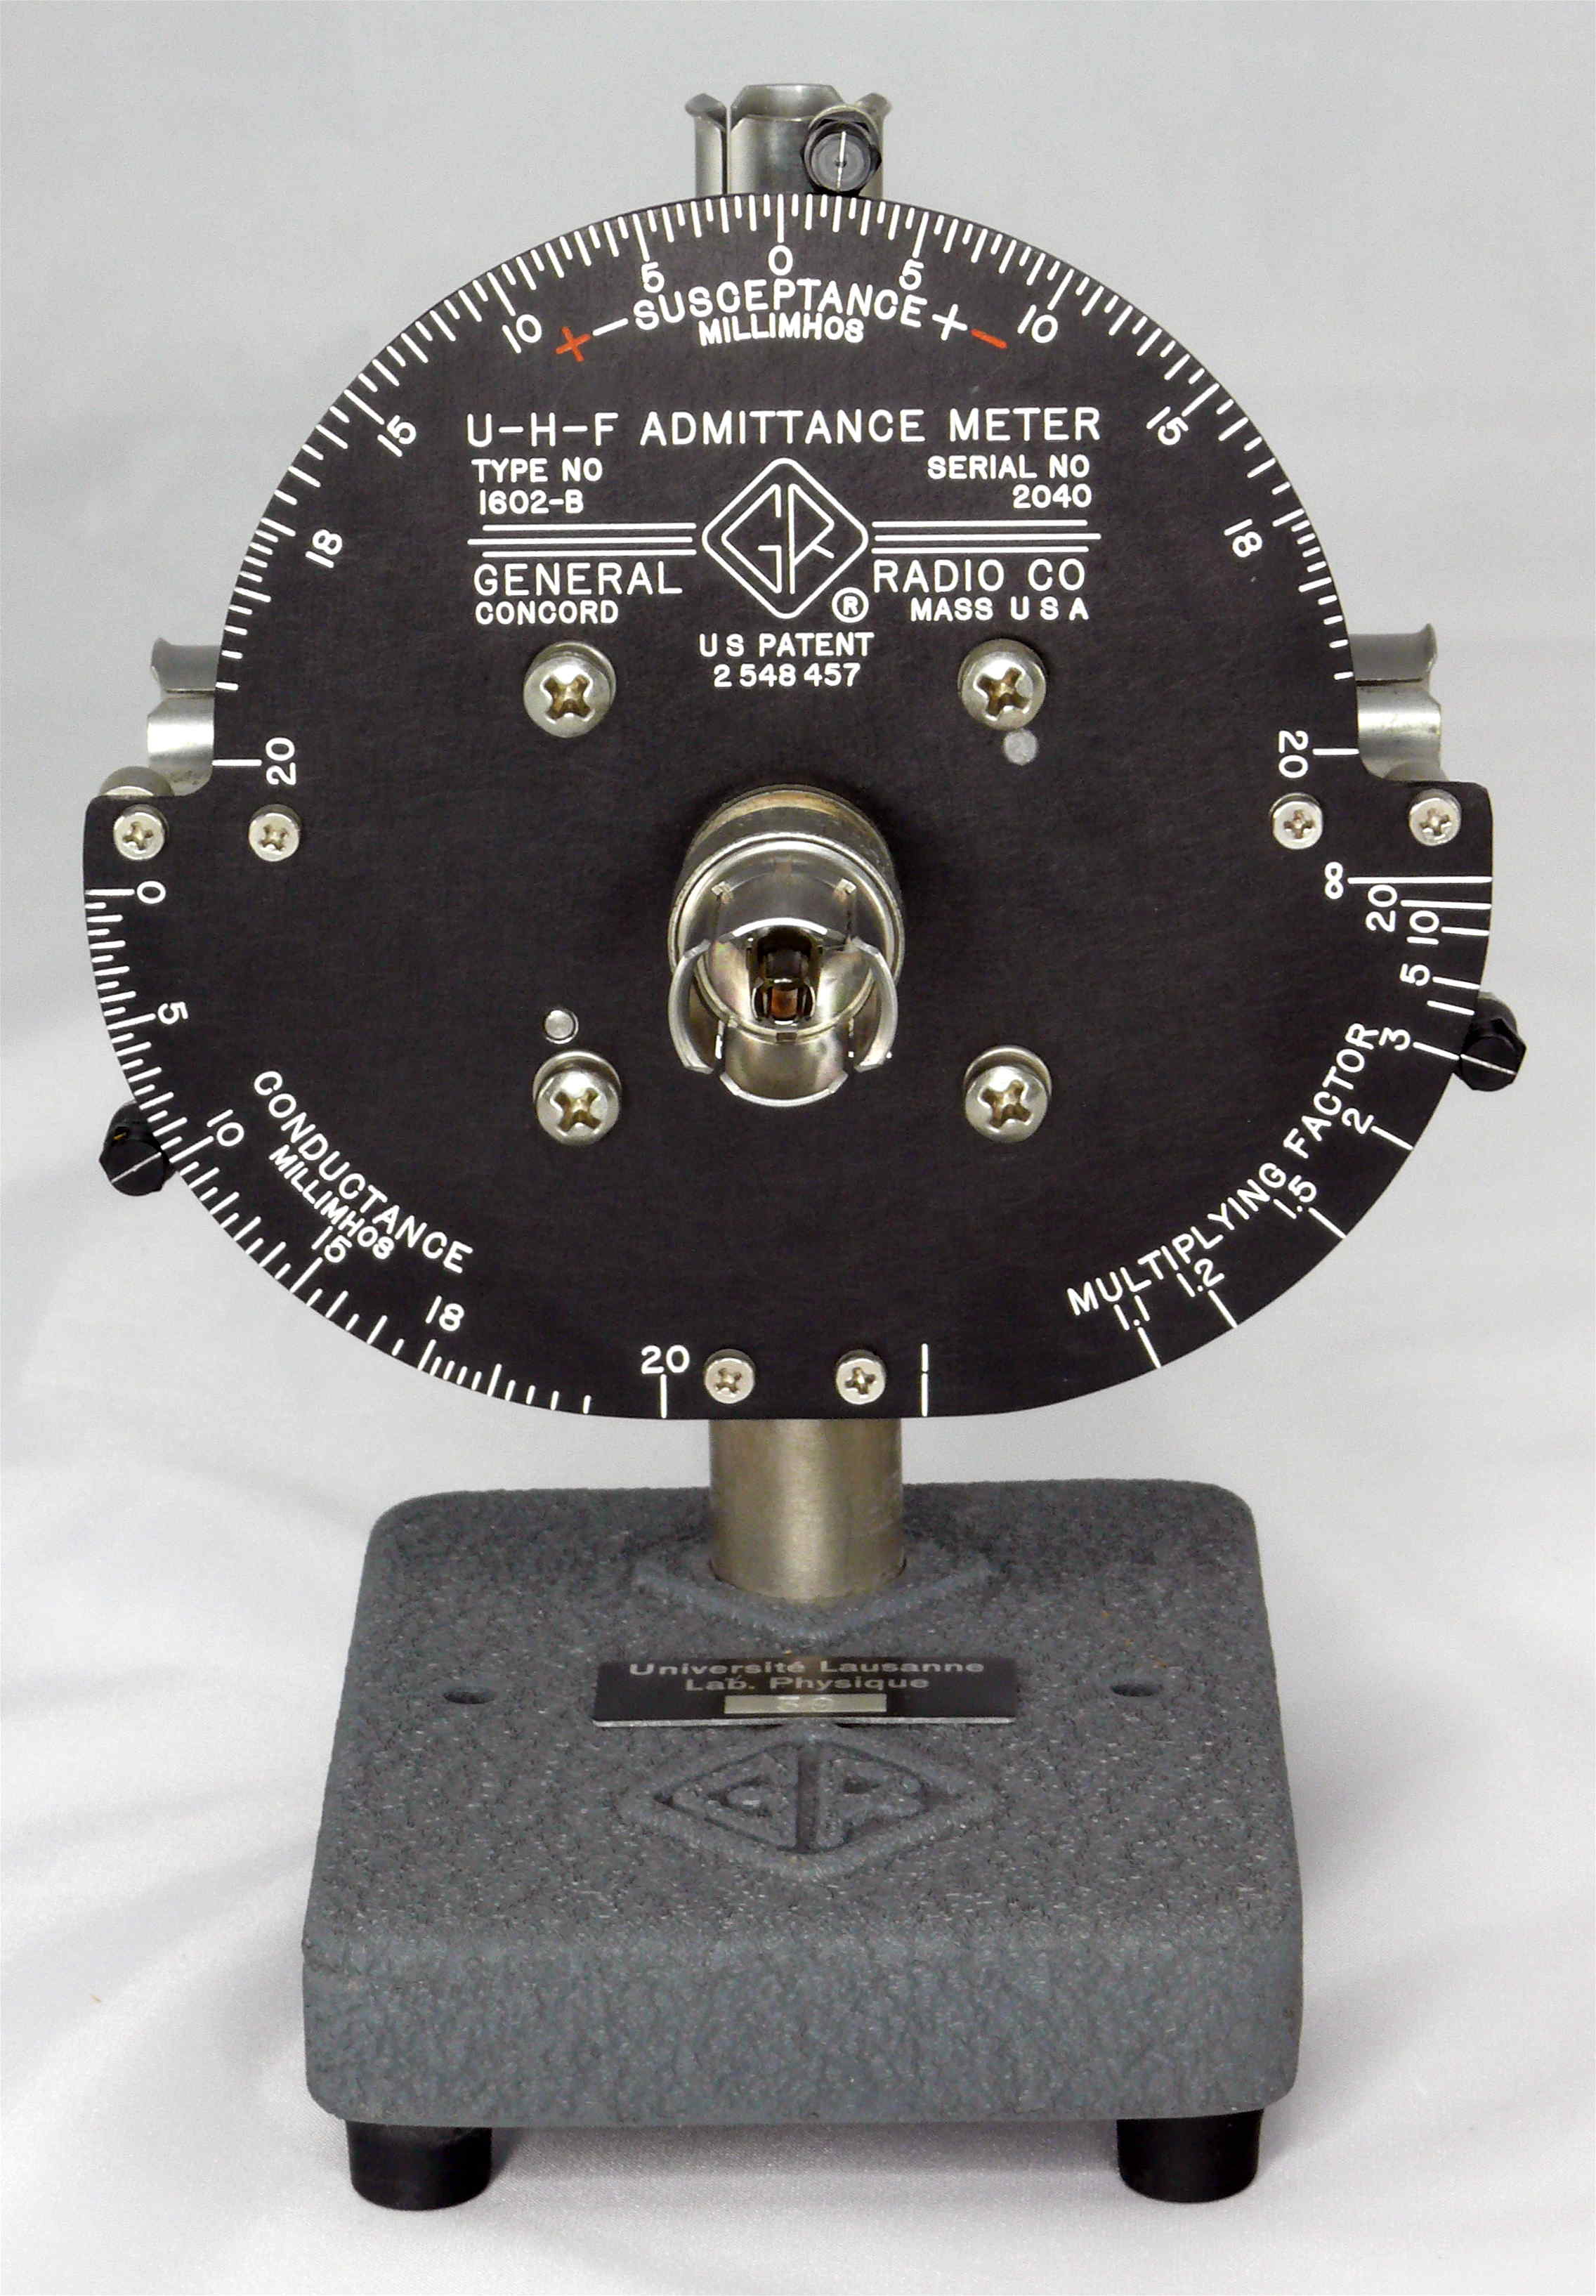 Appareil de mesure d’admittance en VHF/UHF
(GR Type 1602-B)